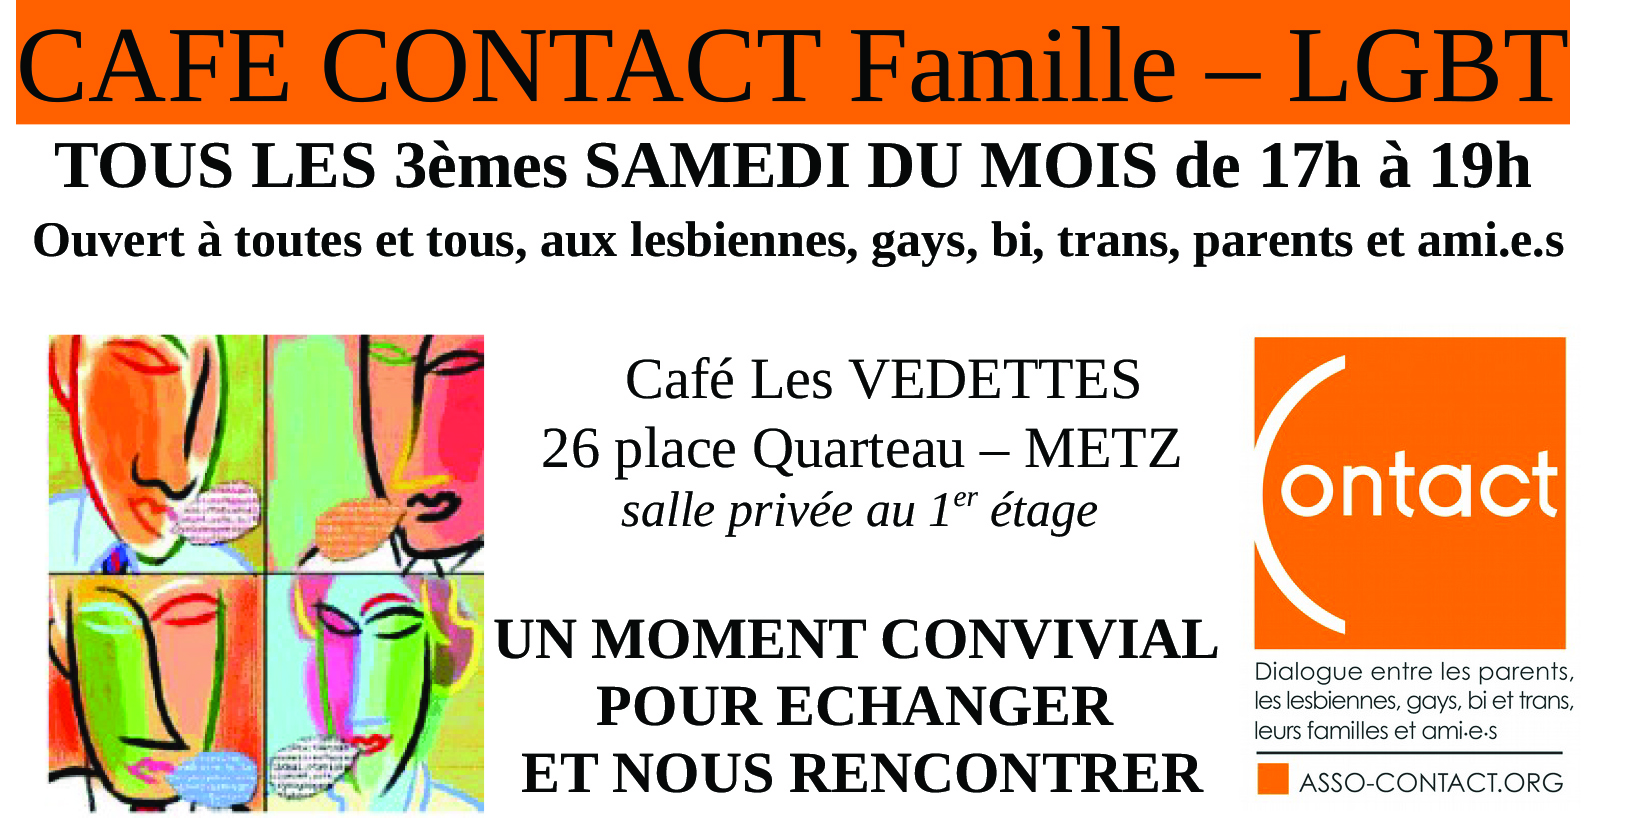 Contact Moselle organise des Cafés Contact aux Vedettes